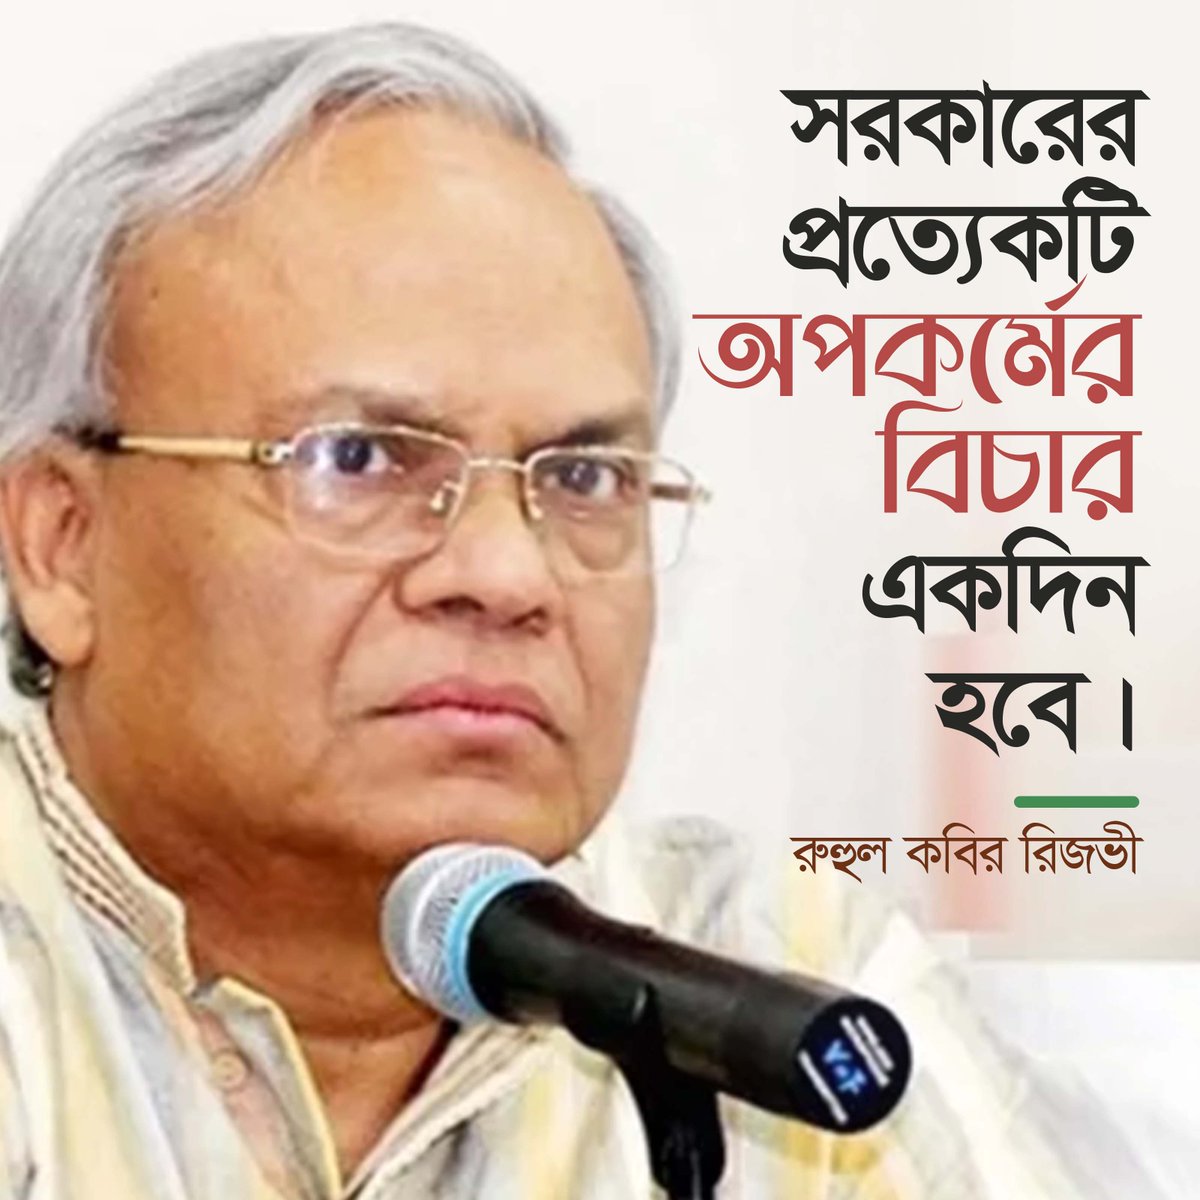 সরকারের প্রত্যেকটি অপকর্মের বিচার একদিন হবে: রুহুল কবির রিজভী

#BNP #Dhaka #Bangladesh